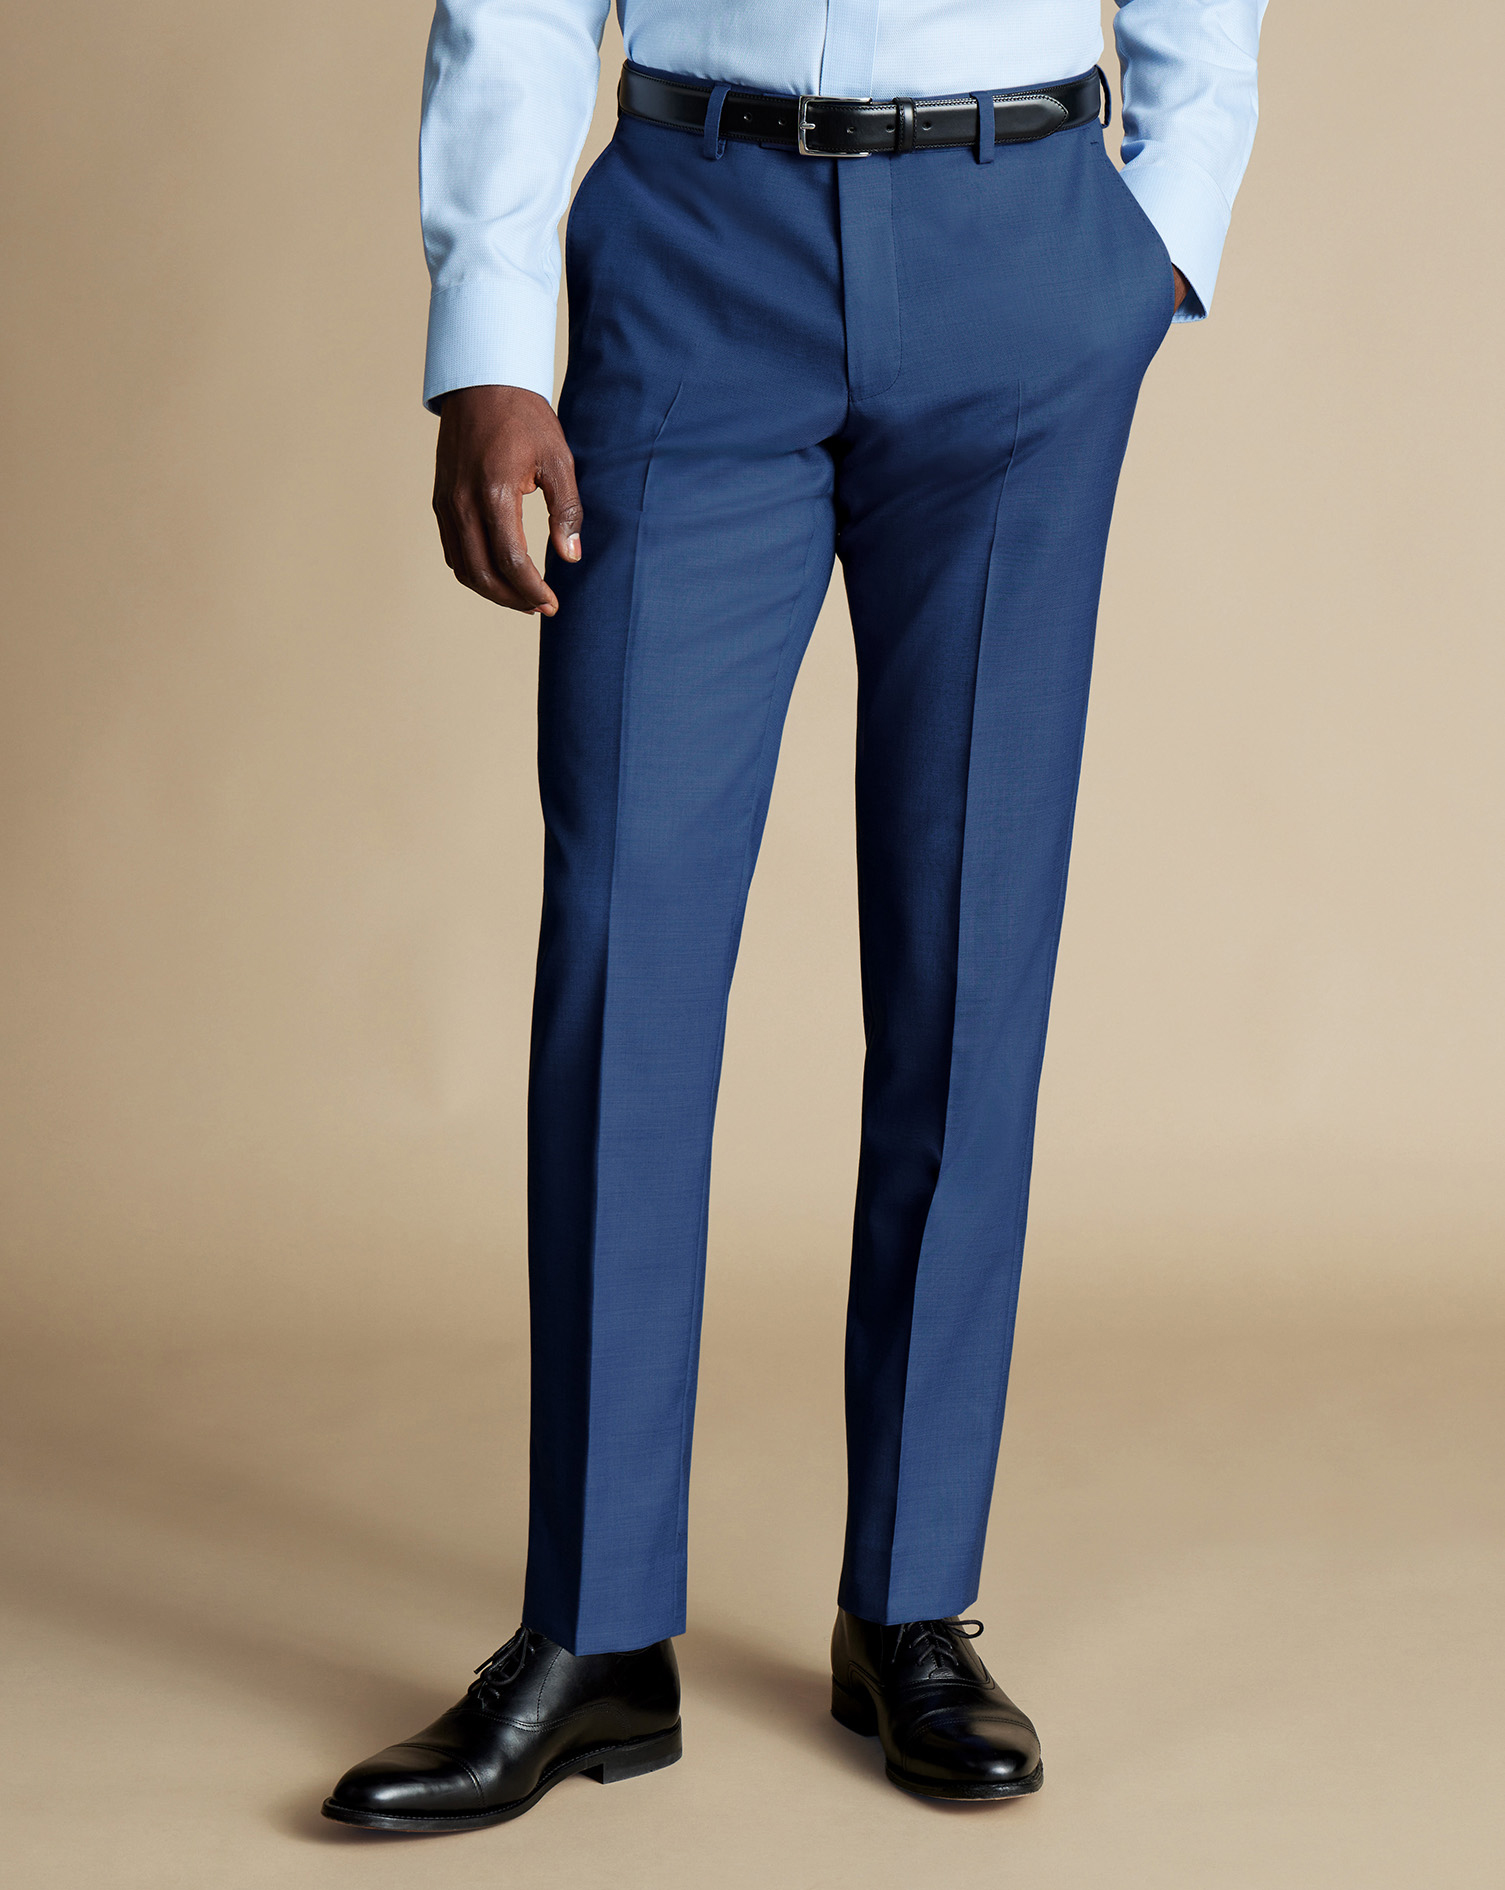 Men's Charles Tyrwhitt Ultimate Performance Sharkskin Suit Trousers - Indigo Blue Size 34/34
